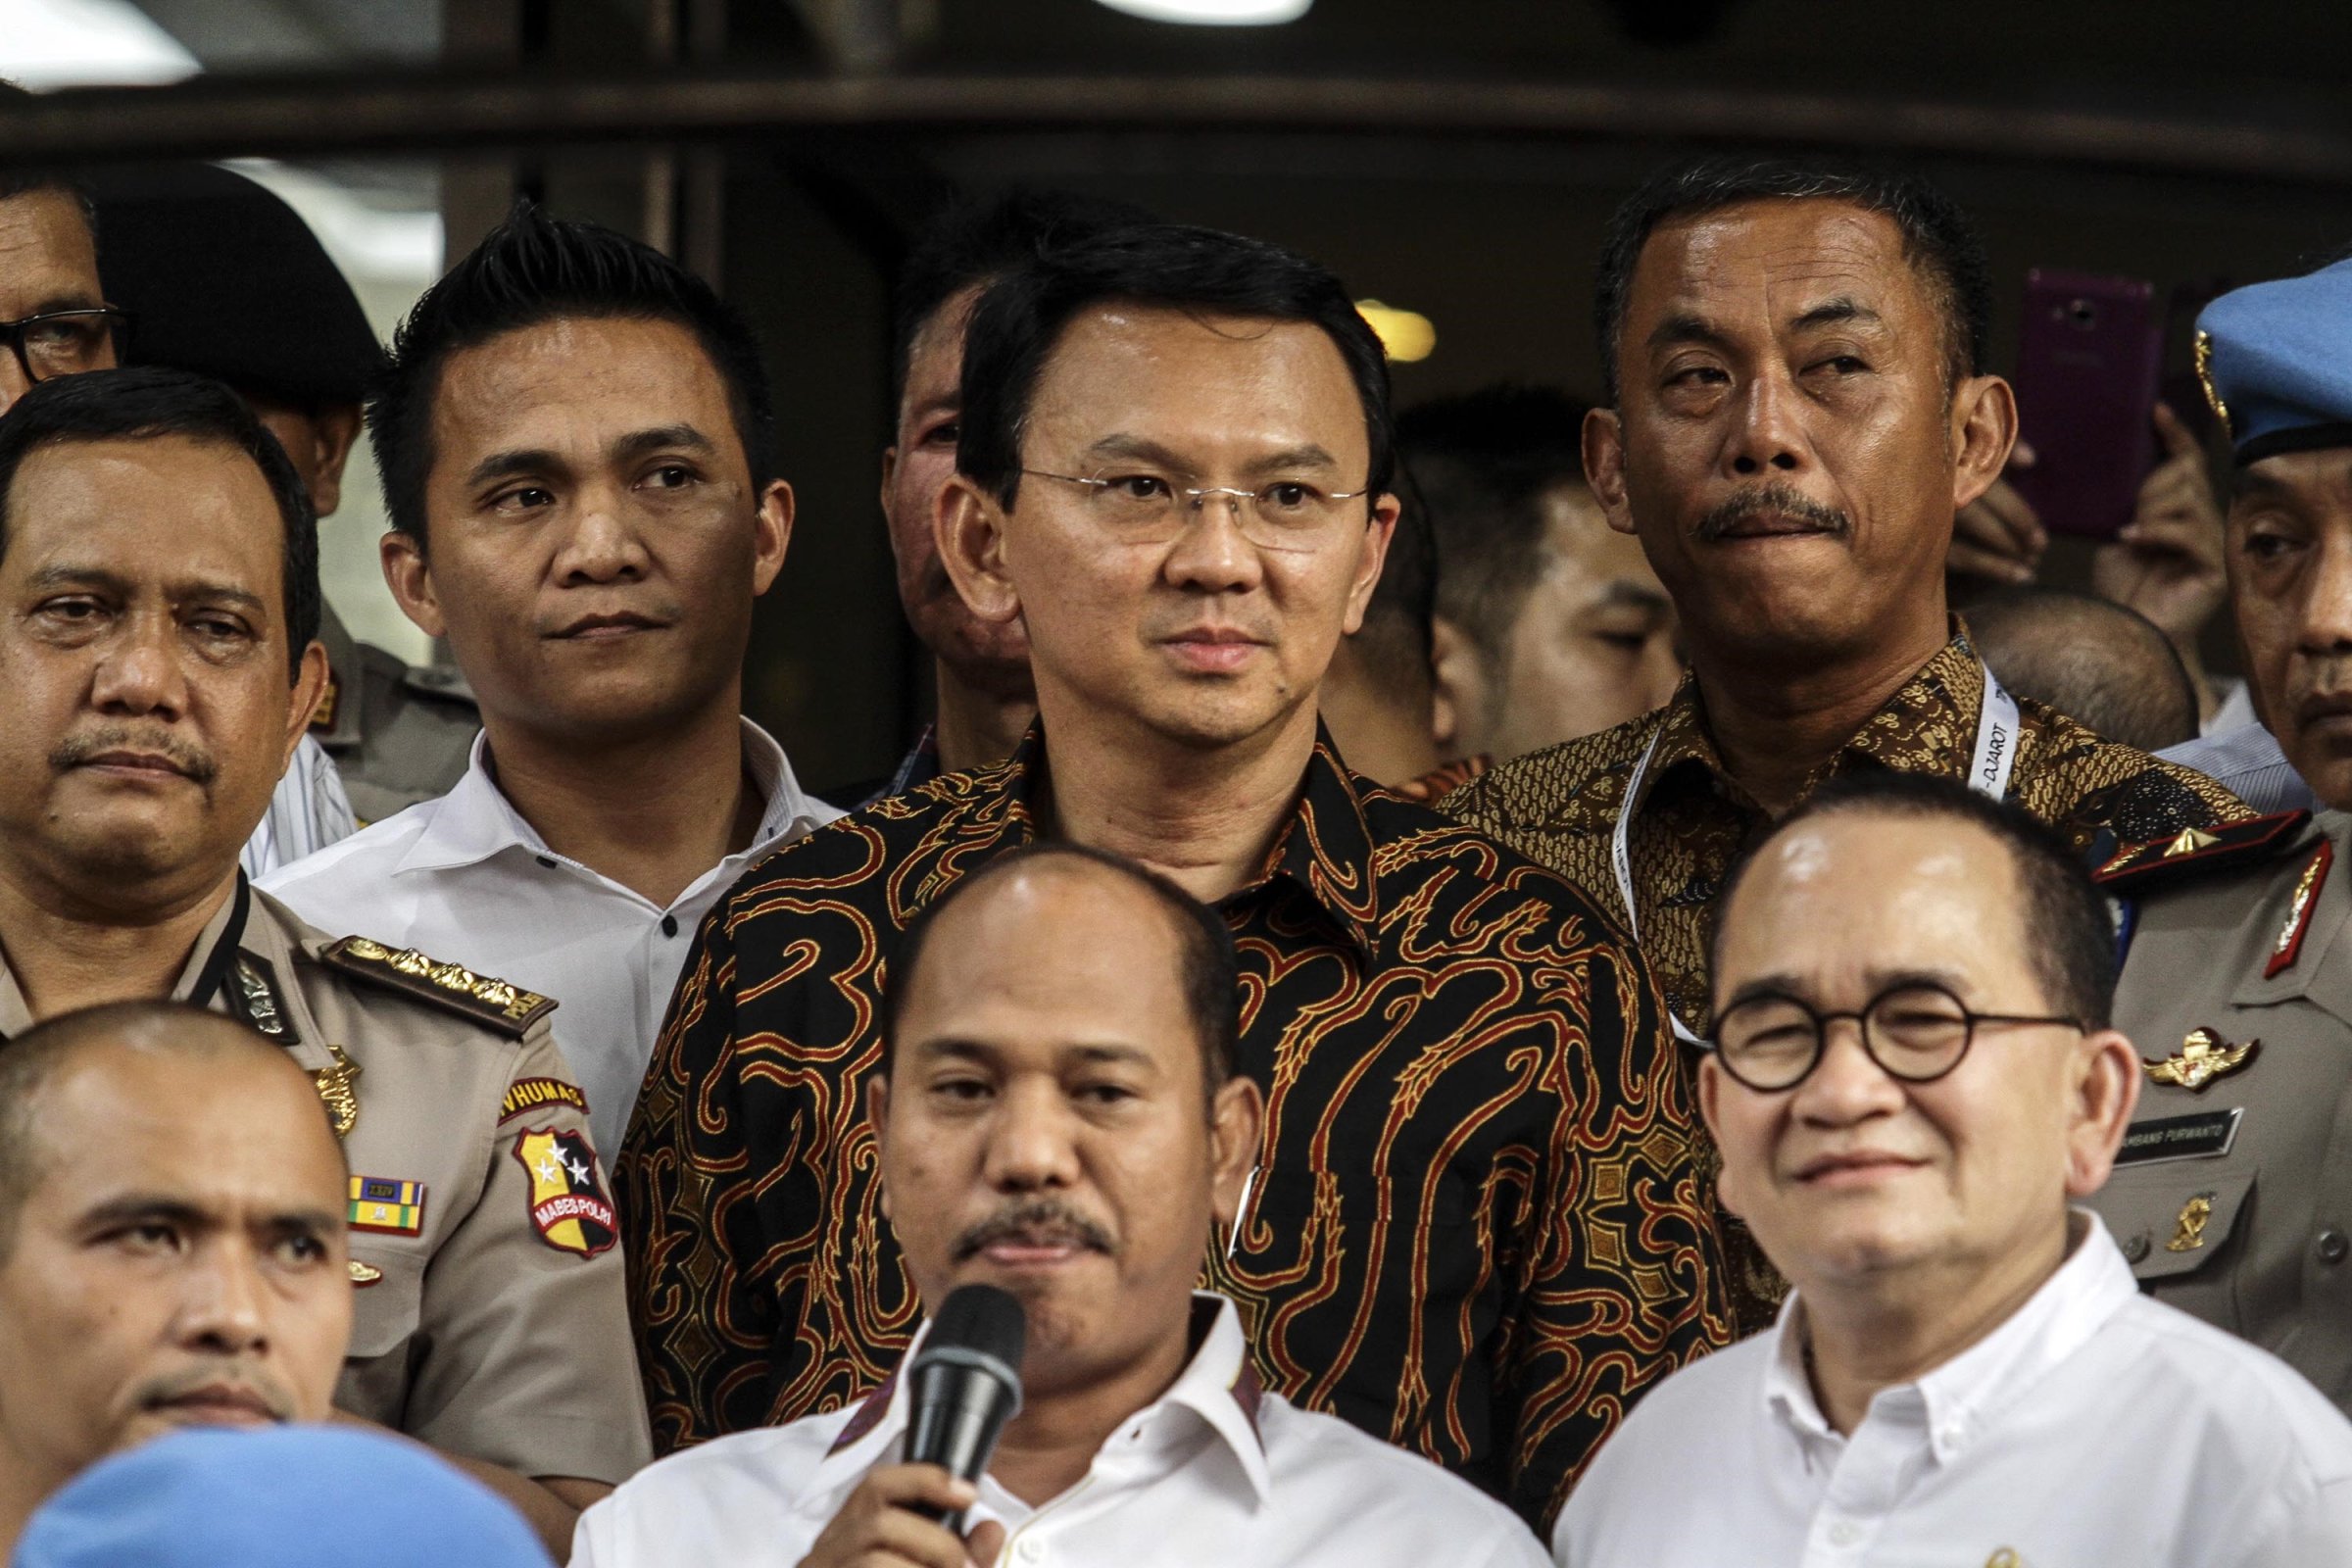 Probe into alleged blasphemy by Jakarta governor begins